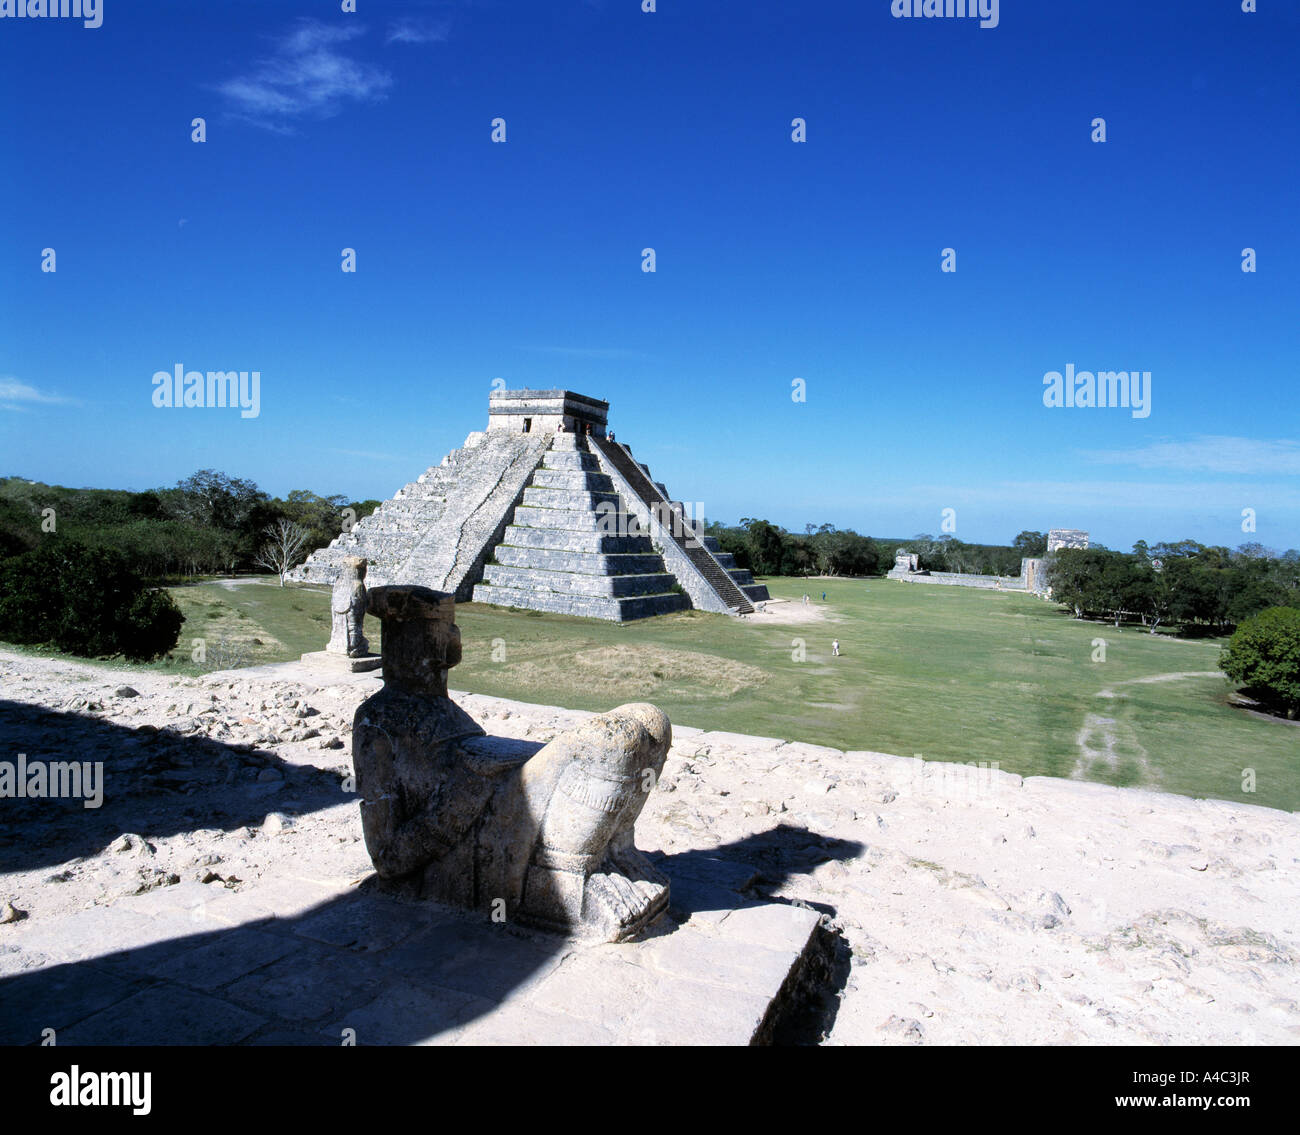 Vista desde el templo de los guerreros frente al templo de Chichen Itza, la ruina de la civilización maya Foto de stock